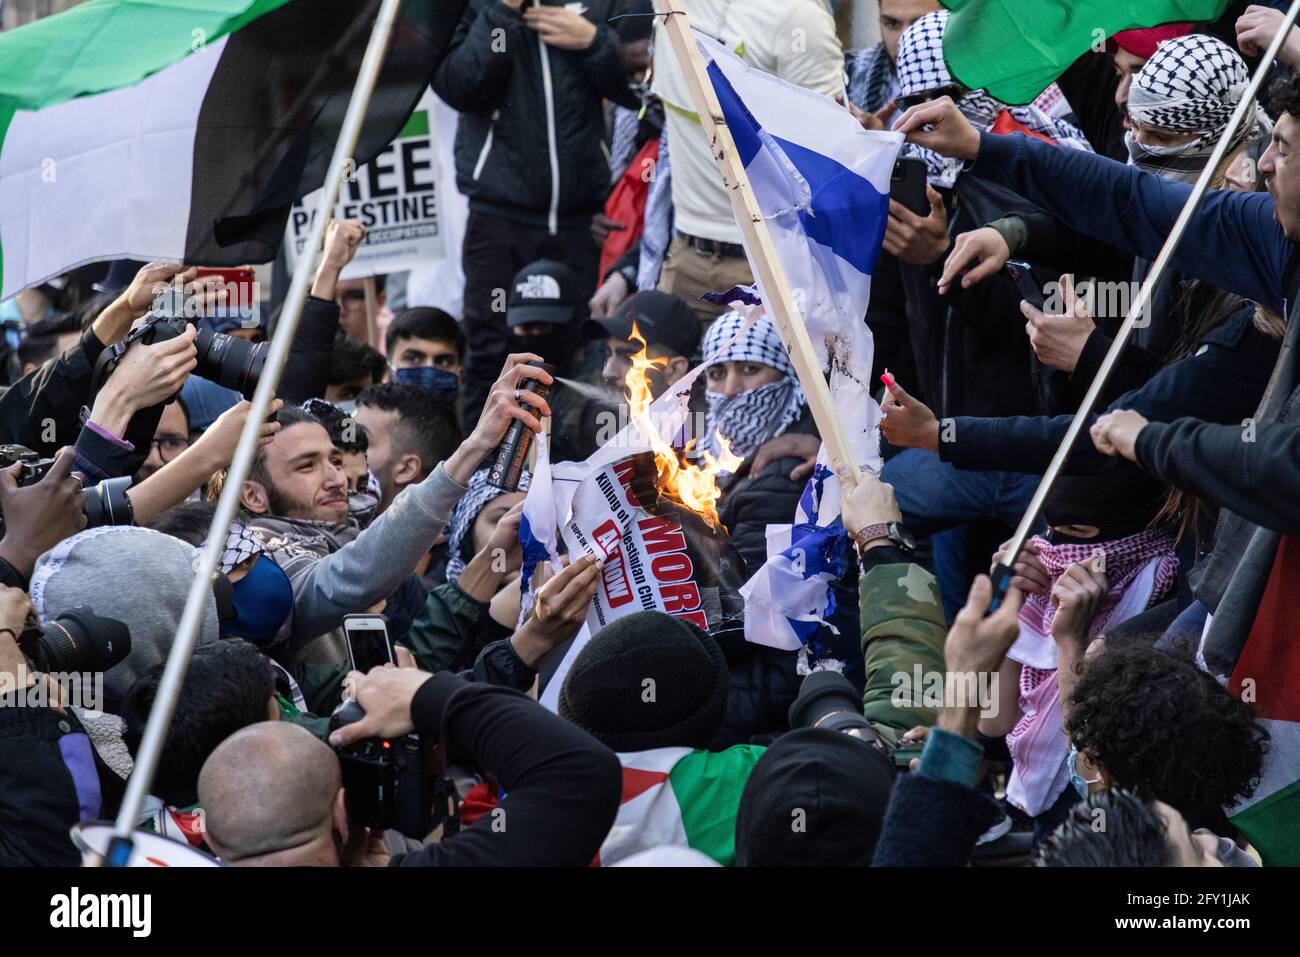 Massen von Demonstranten, die israelische Flagge verbrennen, Protest gegen das Freie Palästina, Botschaft von Israel, London, 22. Mai 2021 Stockfoto